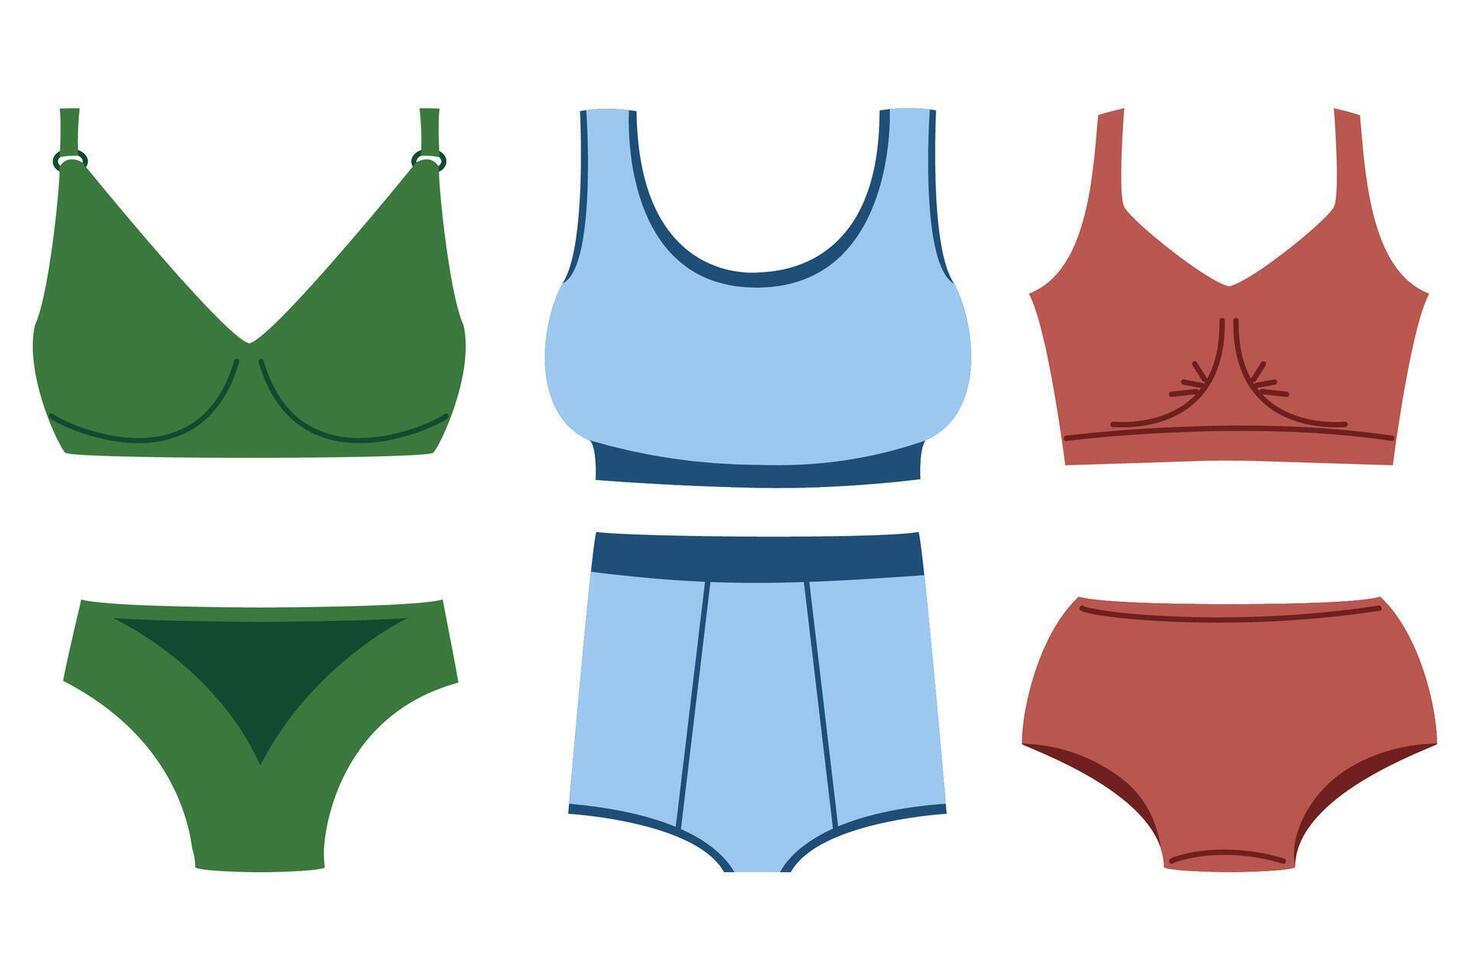 Tipos de ropa interior de mujer. figura femenina en panty. bragas pastel.  ilustración vectorial a4 para lencería.